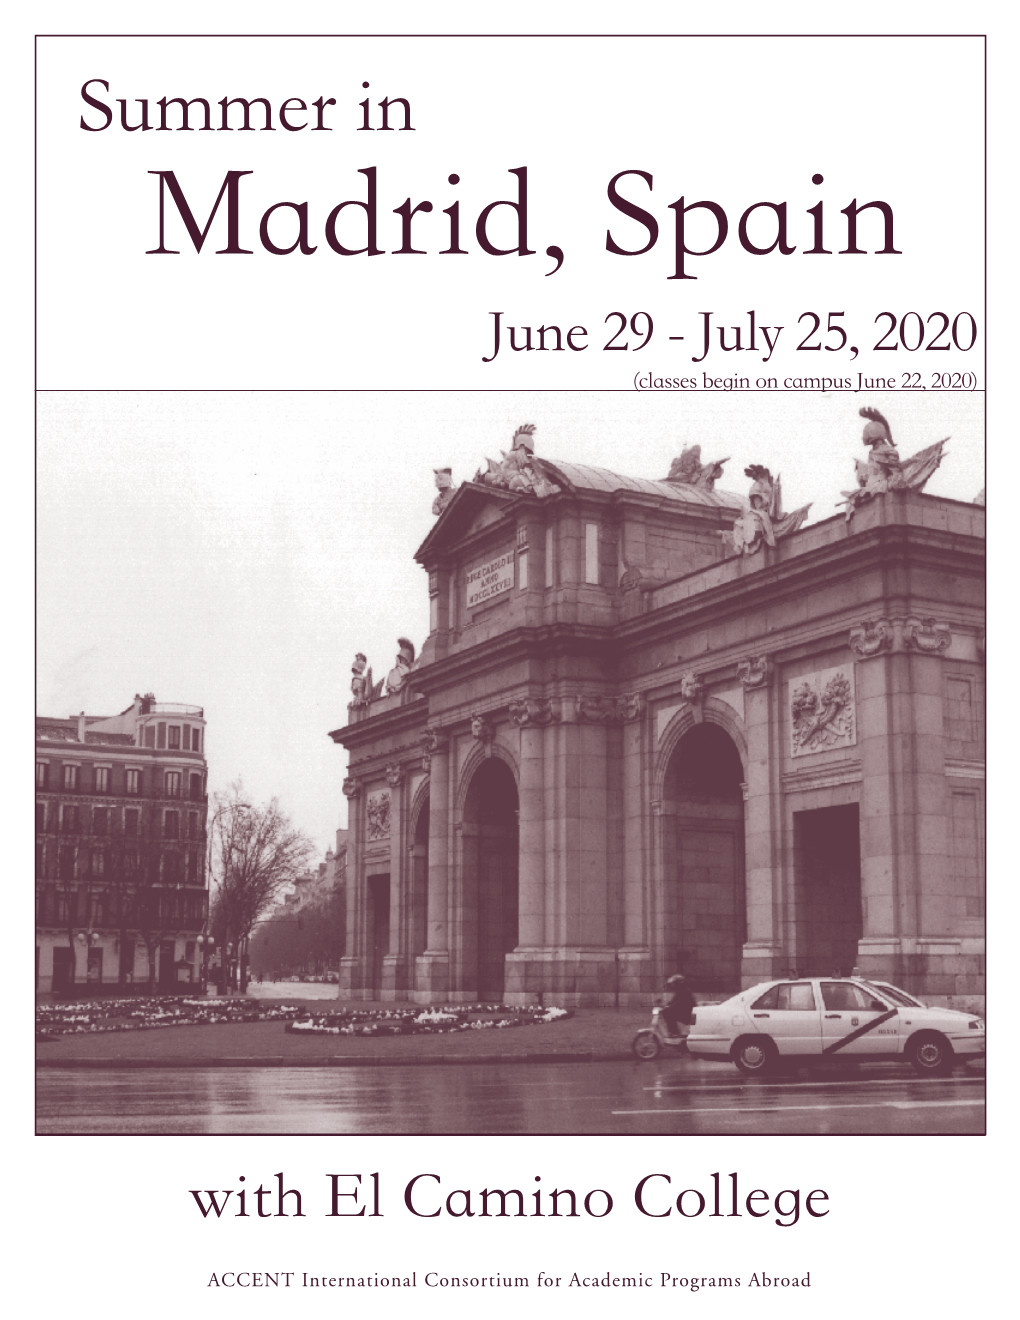 Summer in Madrid, Spain June 29 - July 25, 2020 (Classes Begin on Campus June 22, 2020)